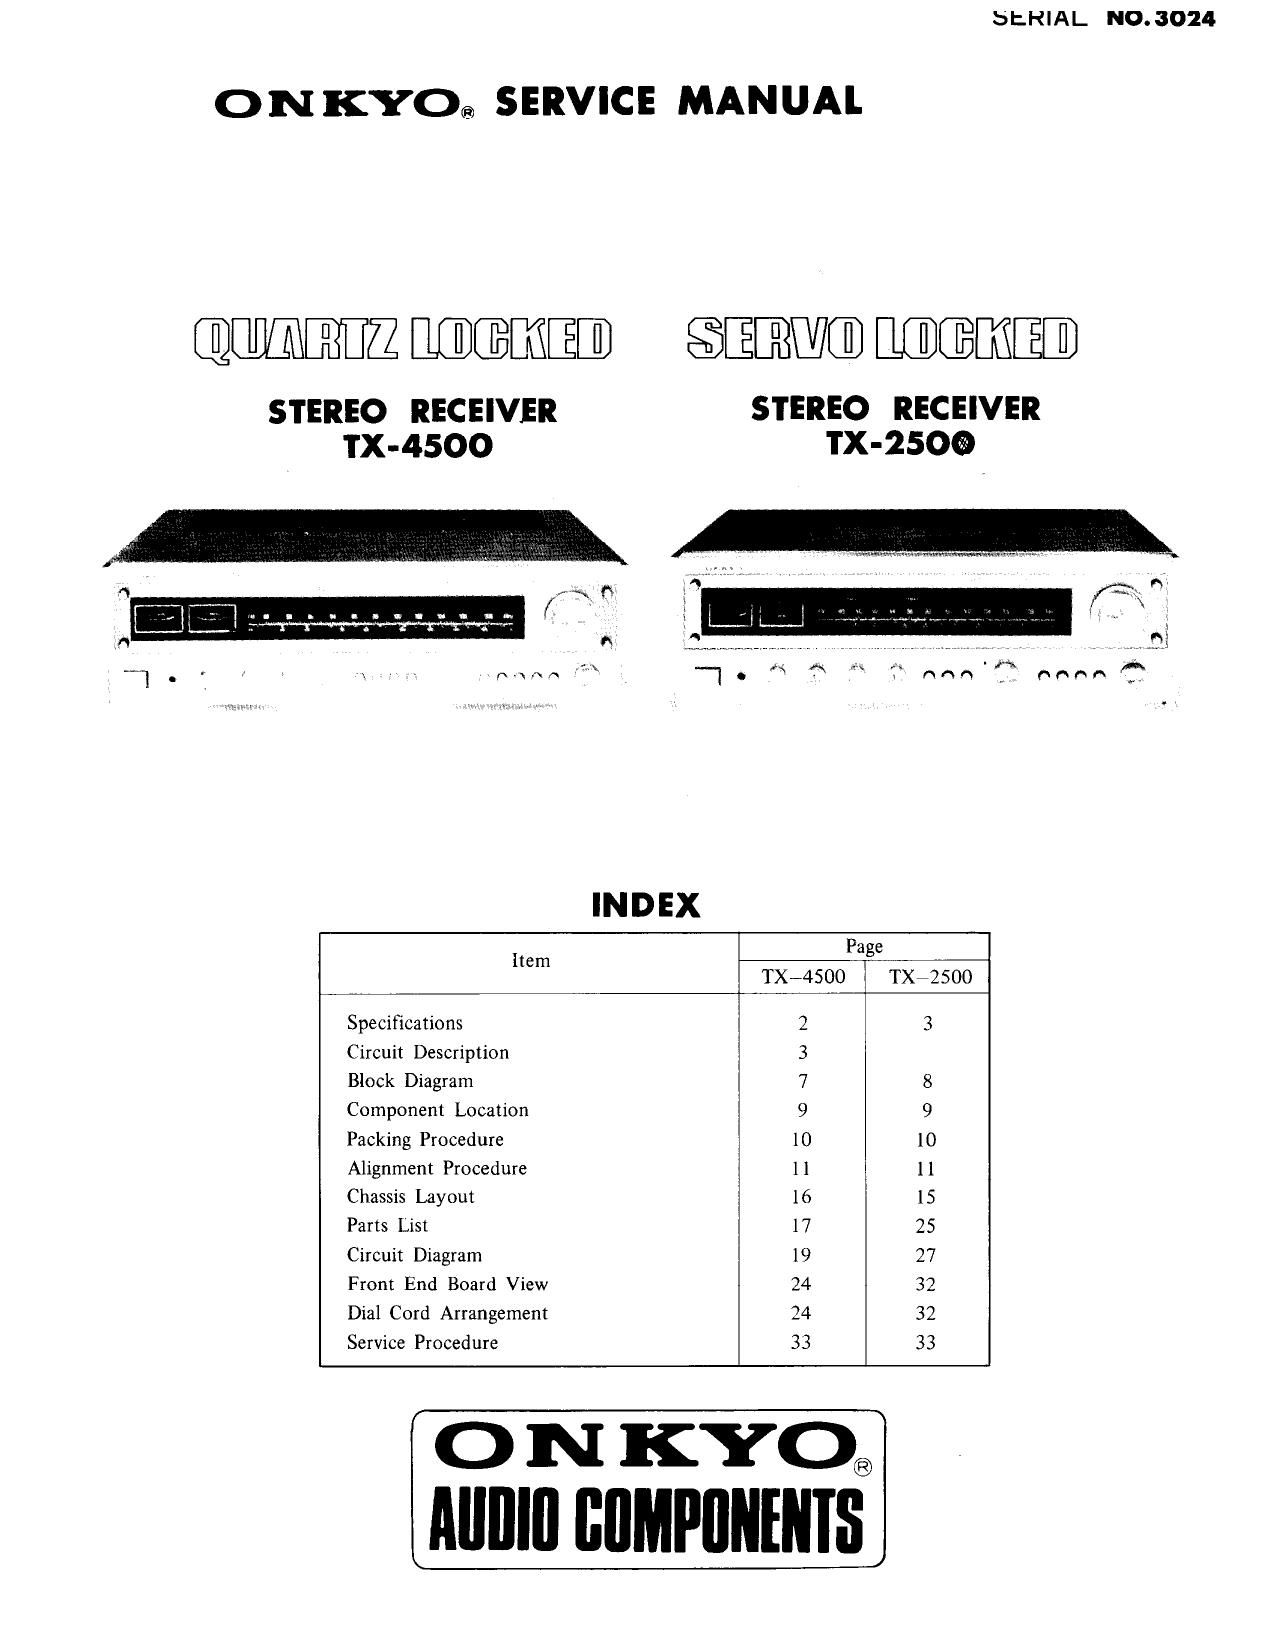 Onkyo TX 2500 Service Manual